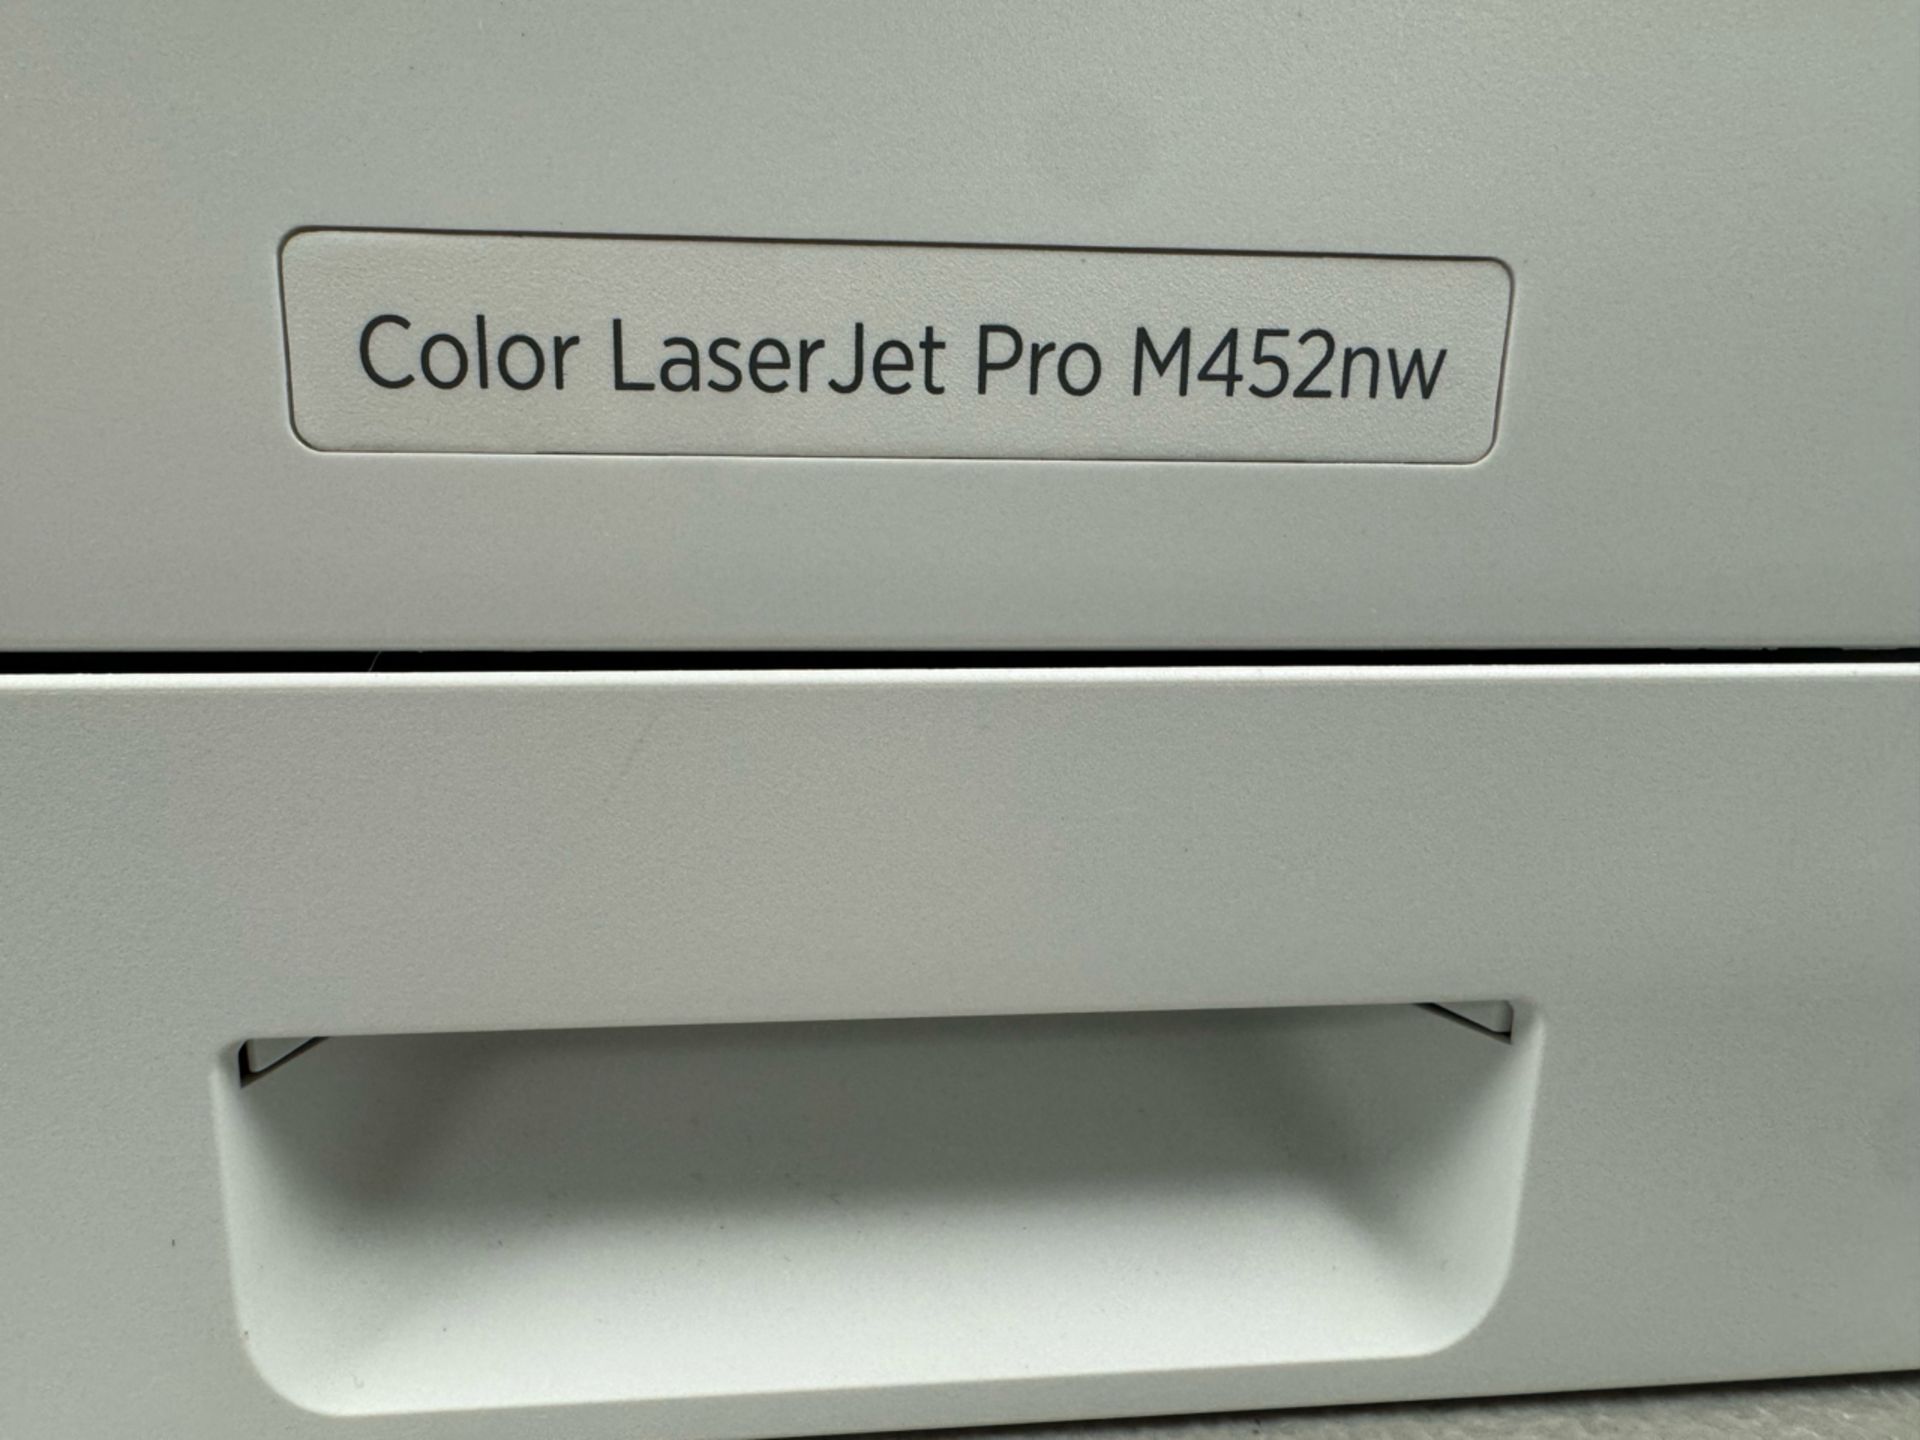 Hp Color Laser Jet Pro Printer - Image 2 of 3